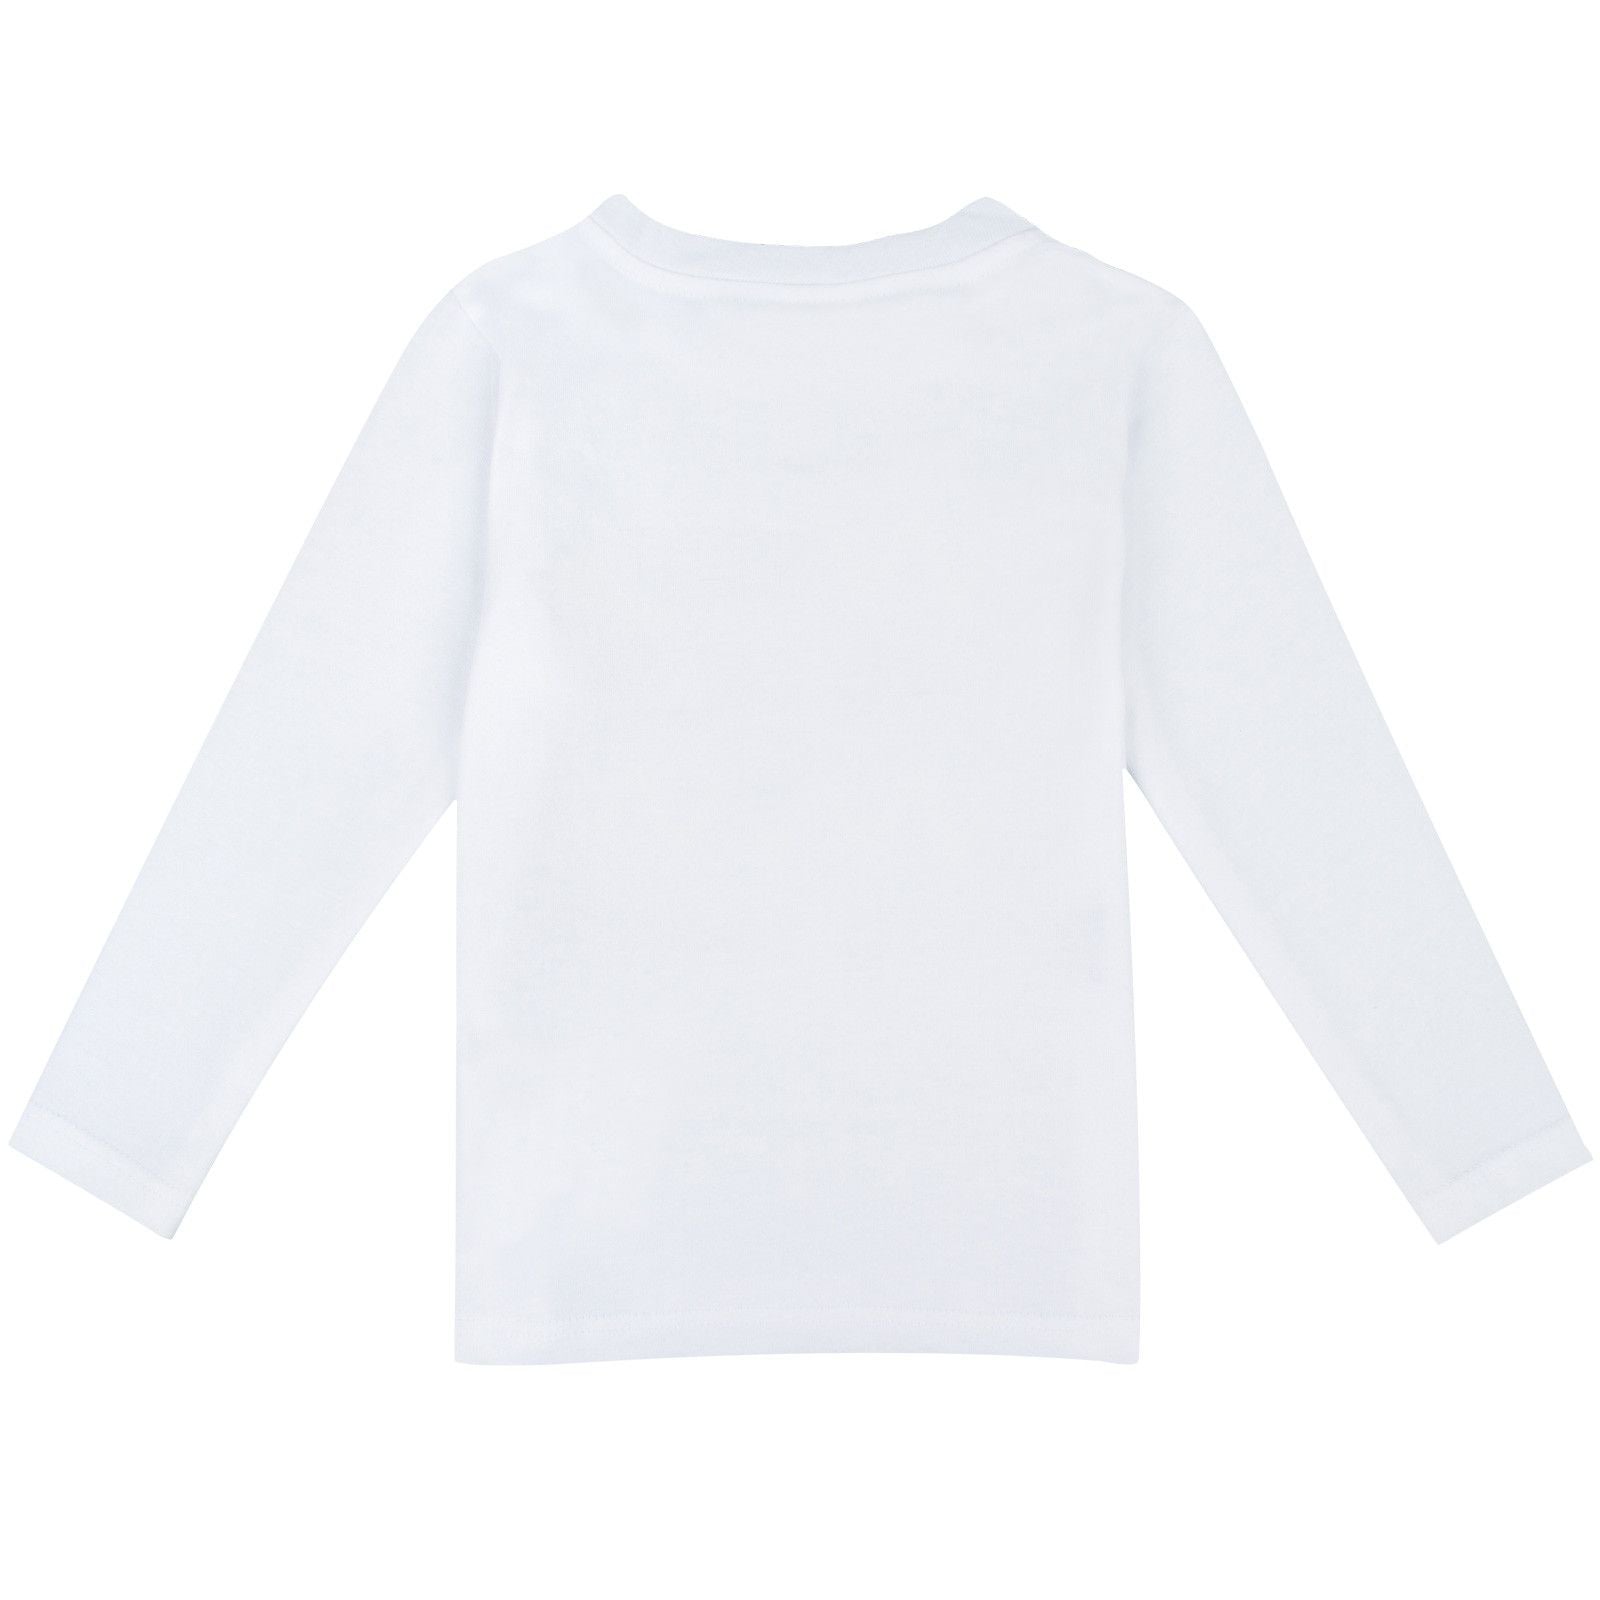 Boys White Monster Dinner Printed T-Shirt - CÉMAROSE | Children's Fashion Store - 2